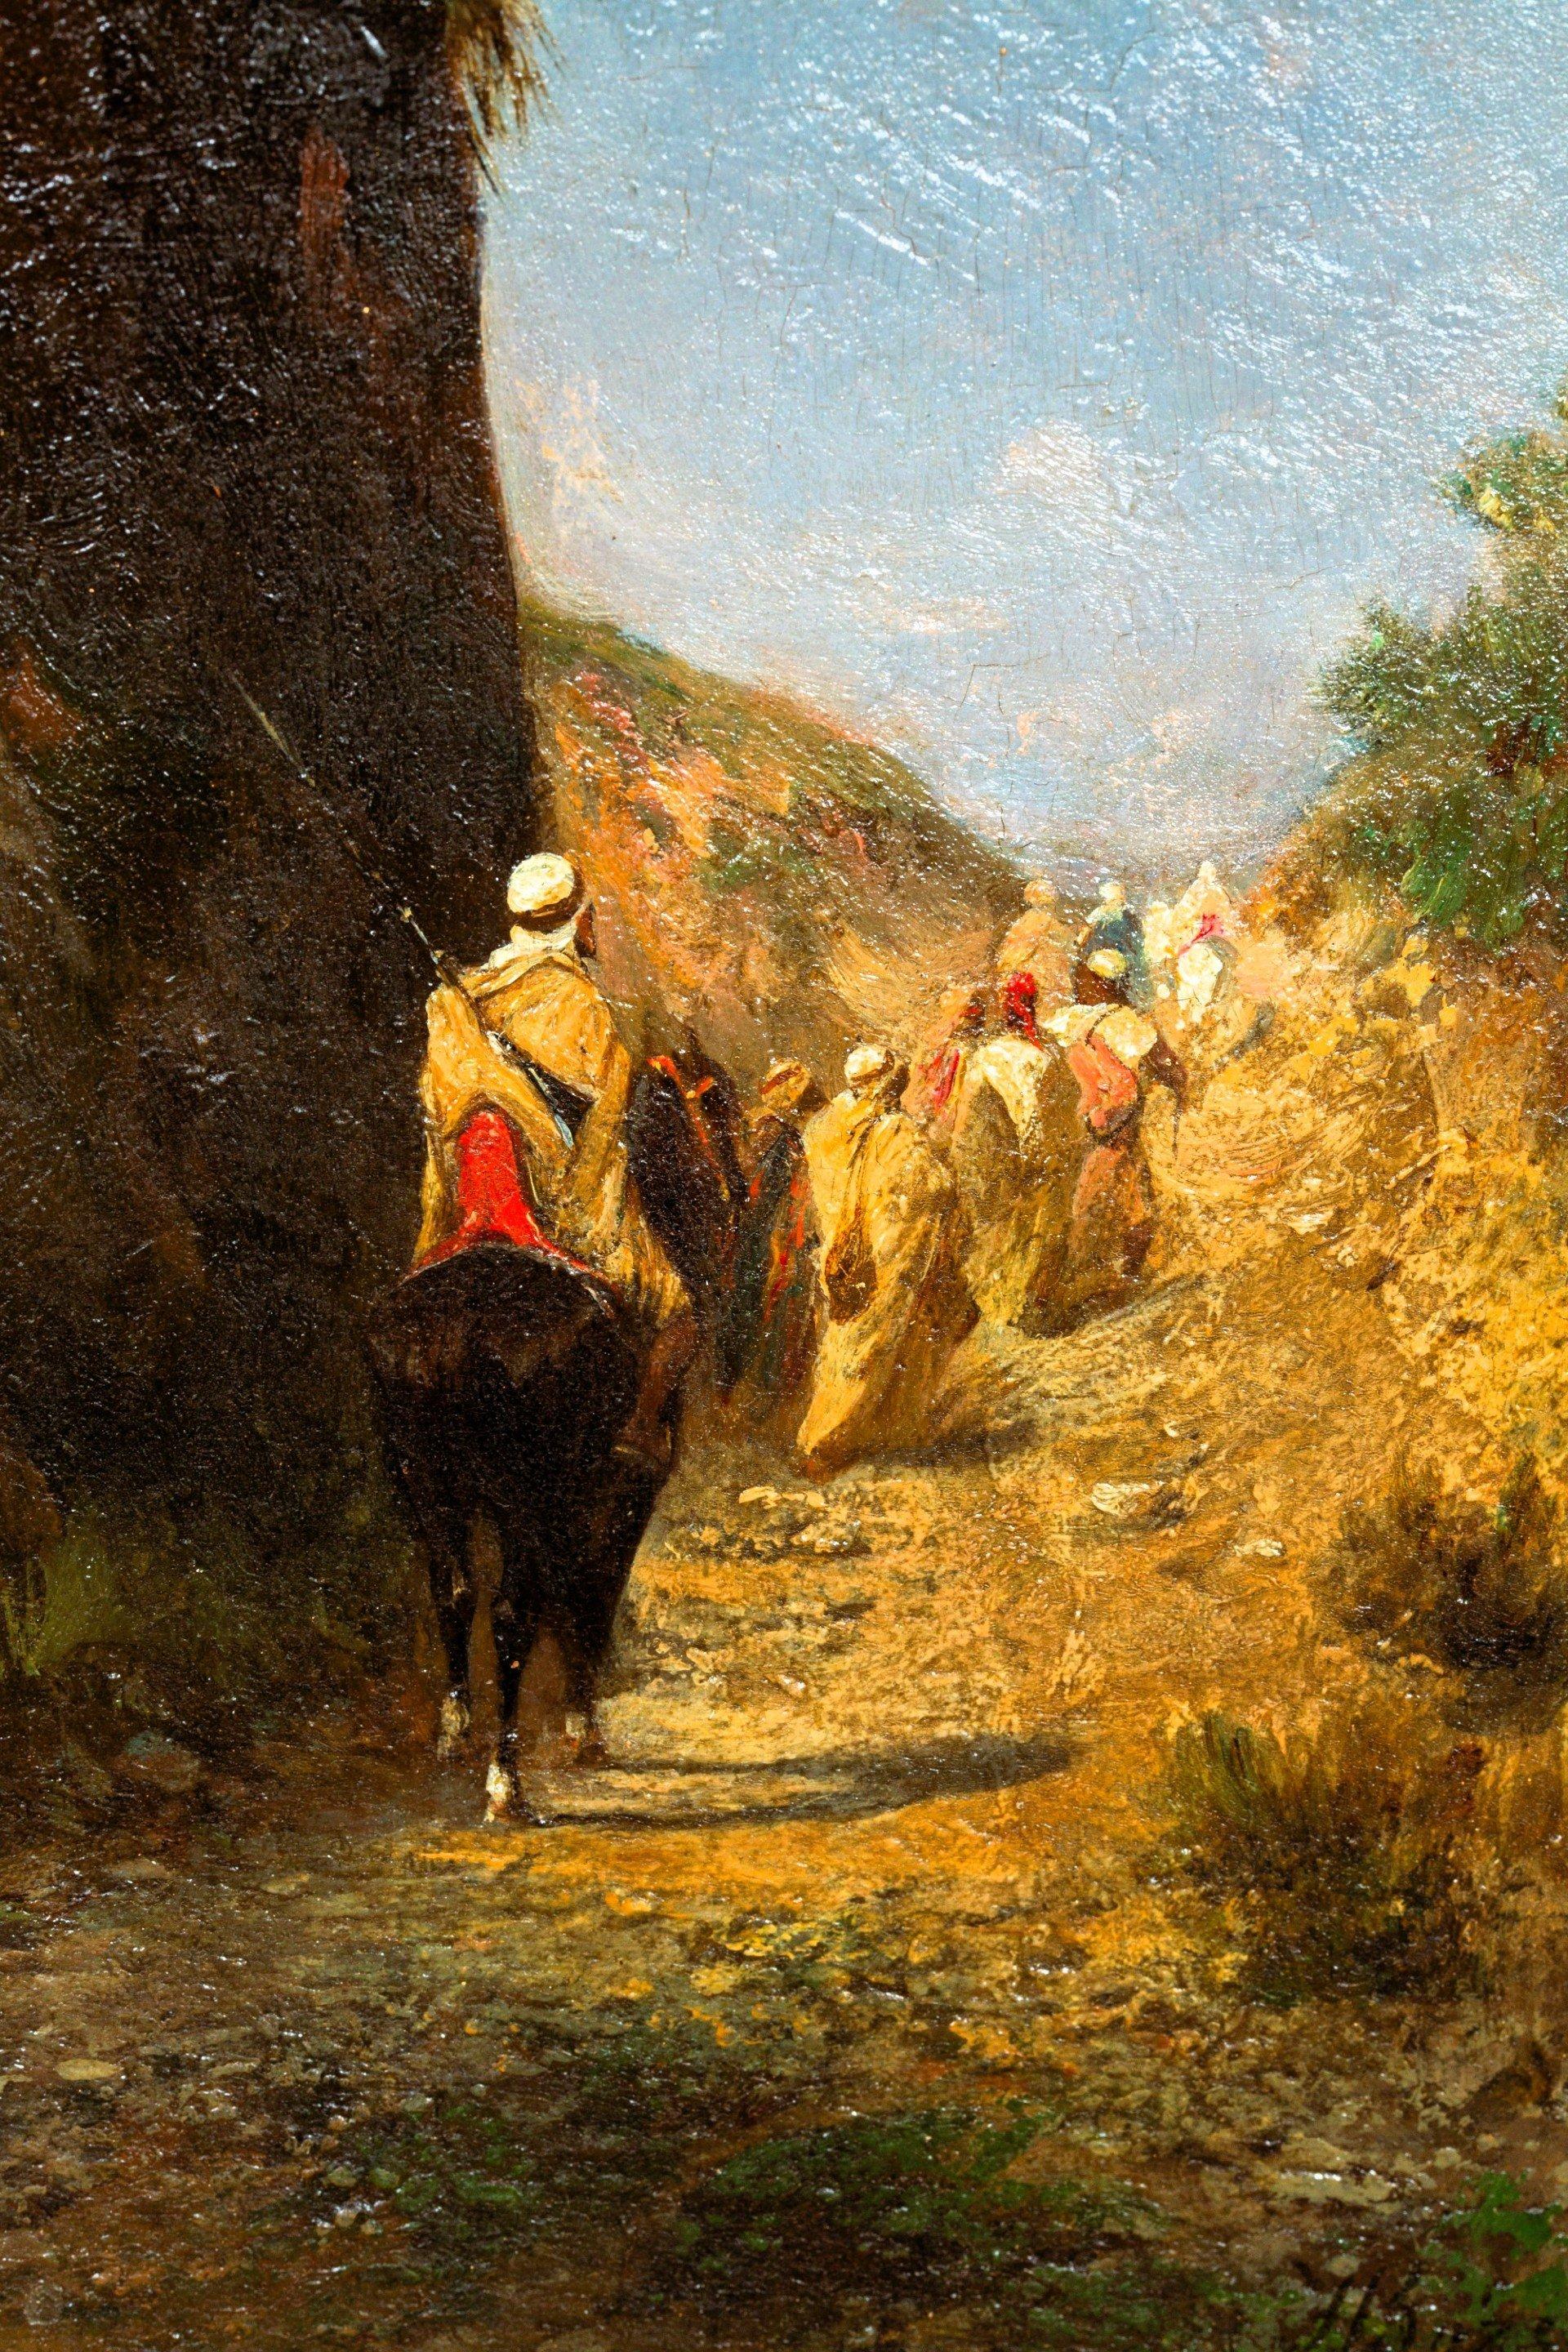 Cavaliers et bédouins marchants sur un chemin près d’une falaise.
(panneau 32 *20 cm) 
Honoré Boze est un peintre orientaliste français, né à l'île Maurice le 19 avril 1830, et mort à Marseille le 5 janvier 1909 (à 78 ans). Petit-neveu du peintre